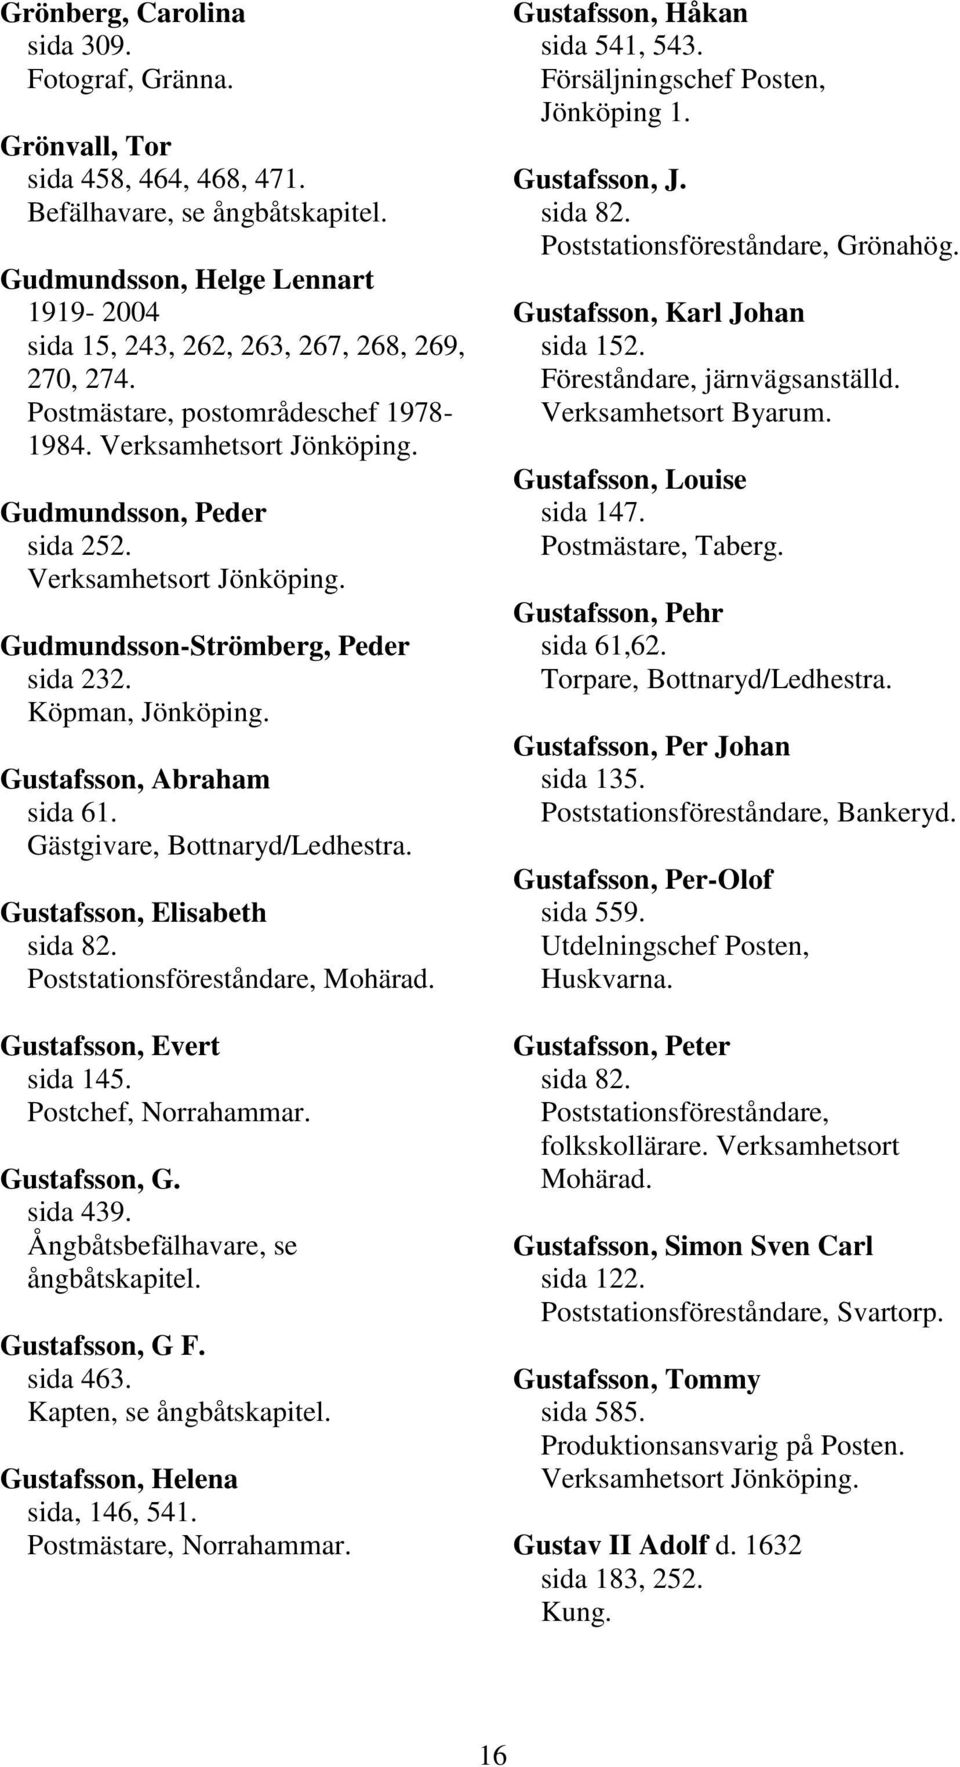 Gustafsson, Elisabeth sida 82. Mohärad. Gustafsson, Evert sida 145. Postchef, Norrahammar. Gustafsson, G. sida 439. Ångbåtsbefälhavare, se ångbåtskapitel. Gustafsson, G F. sida 463.